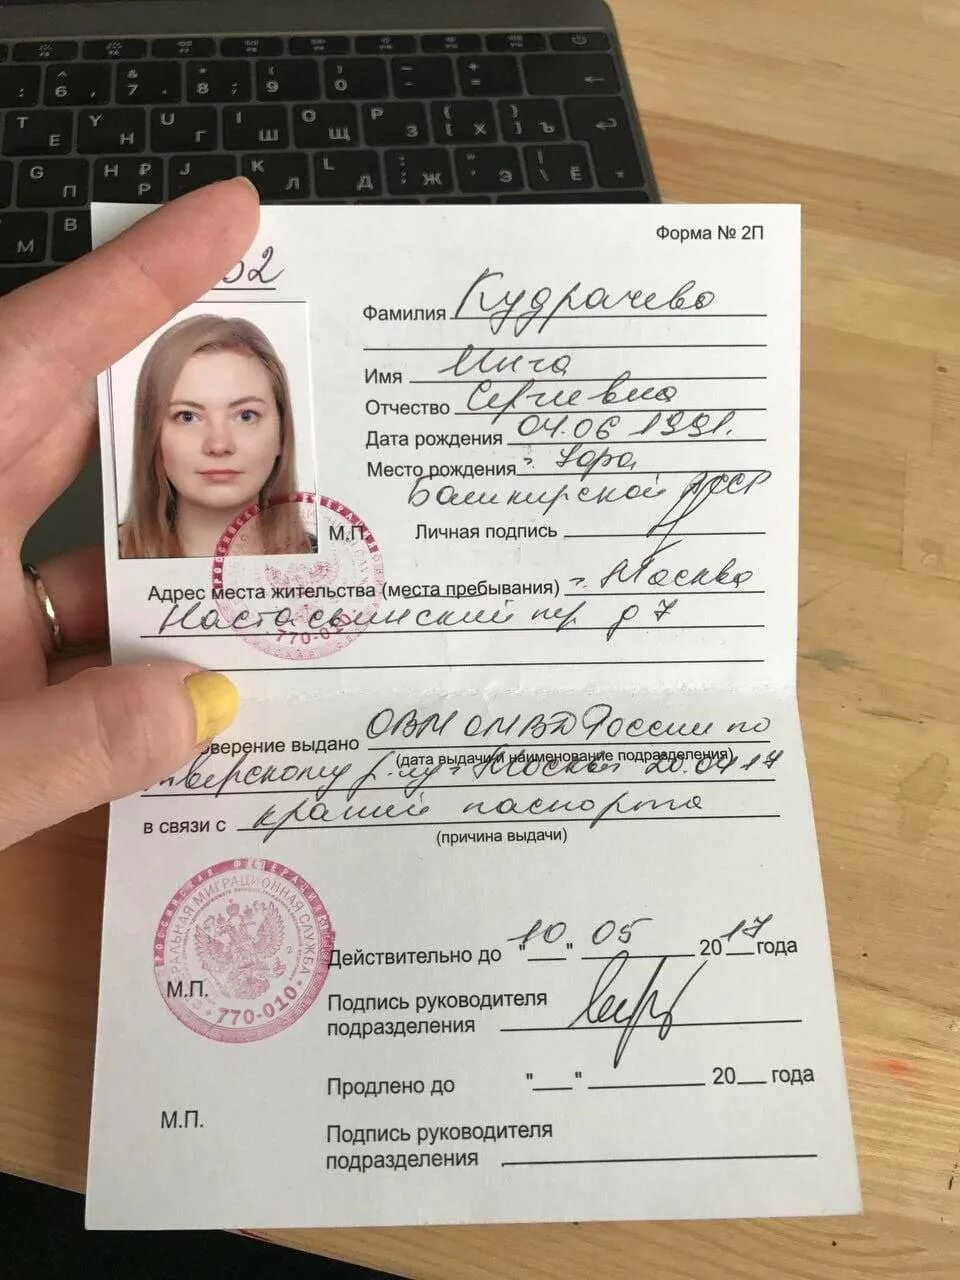 Можно ли без регистрации. Временное удостоверение личности гражданина РФ по форме 2-п.